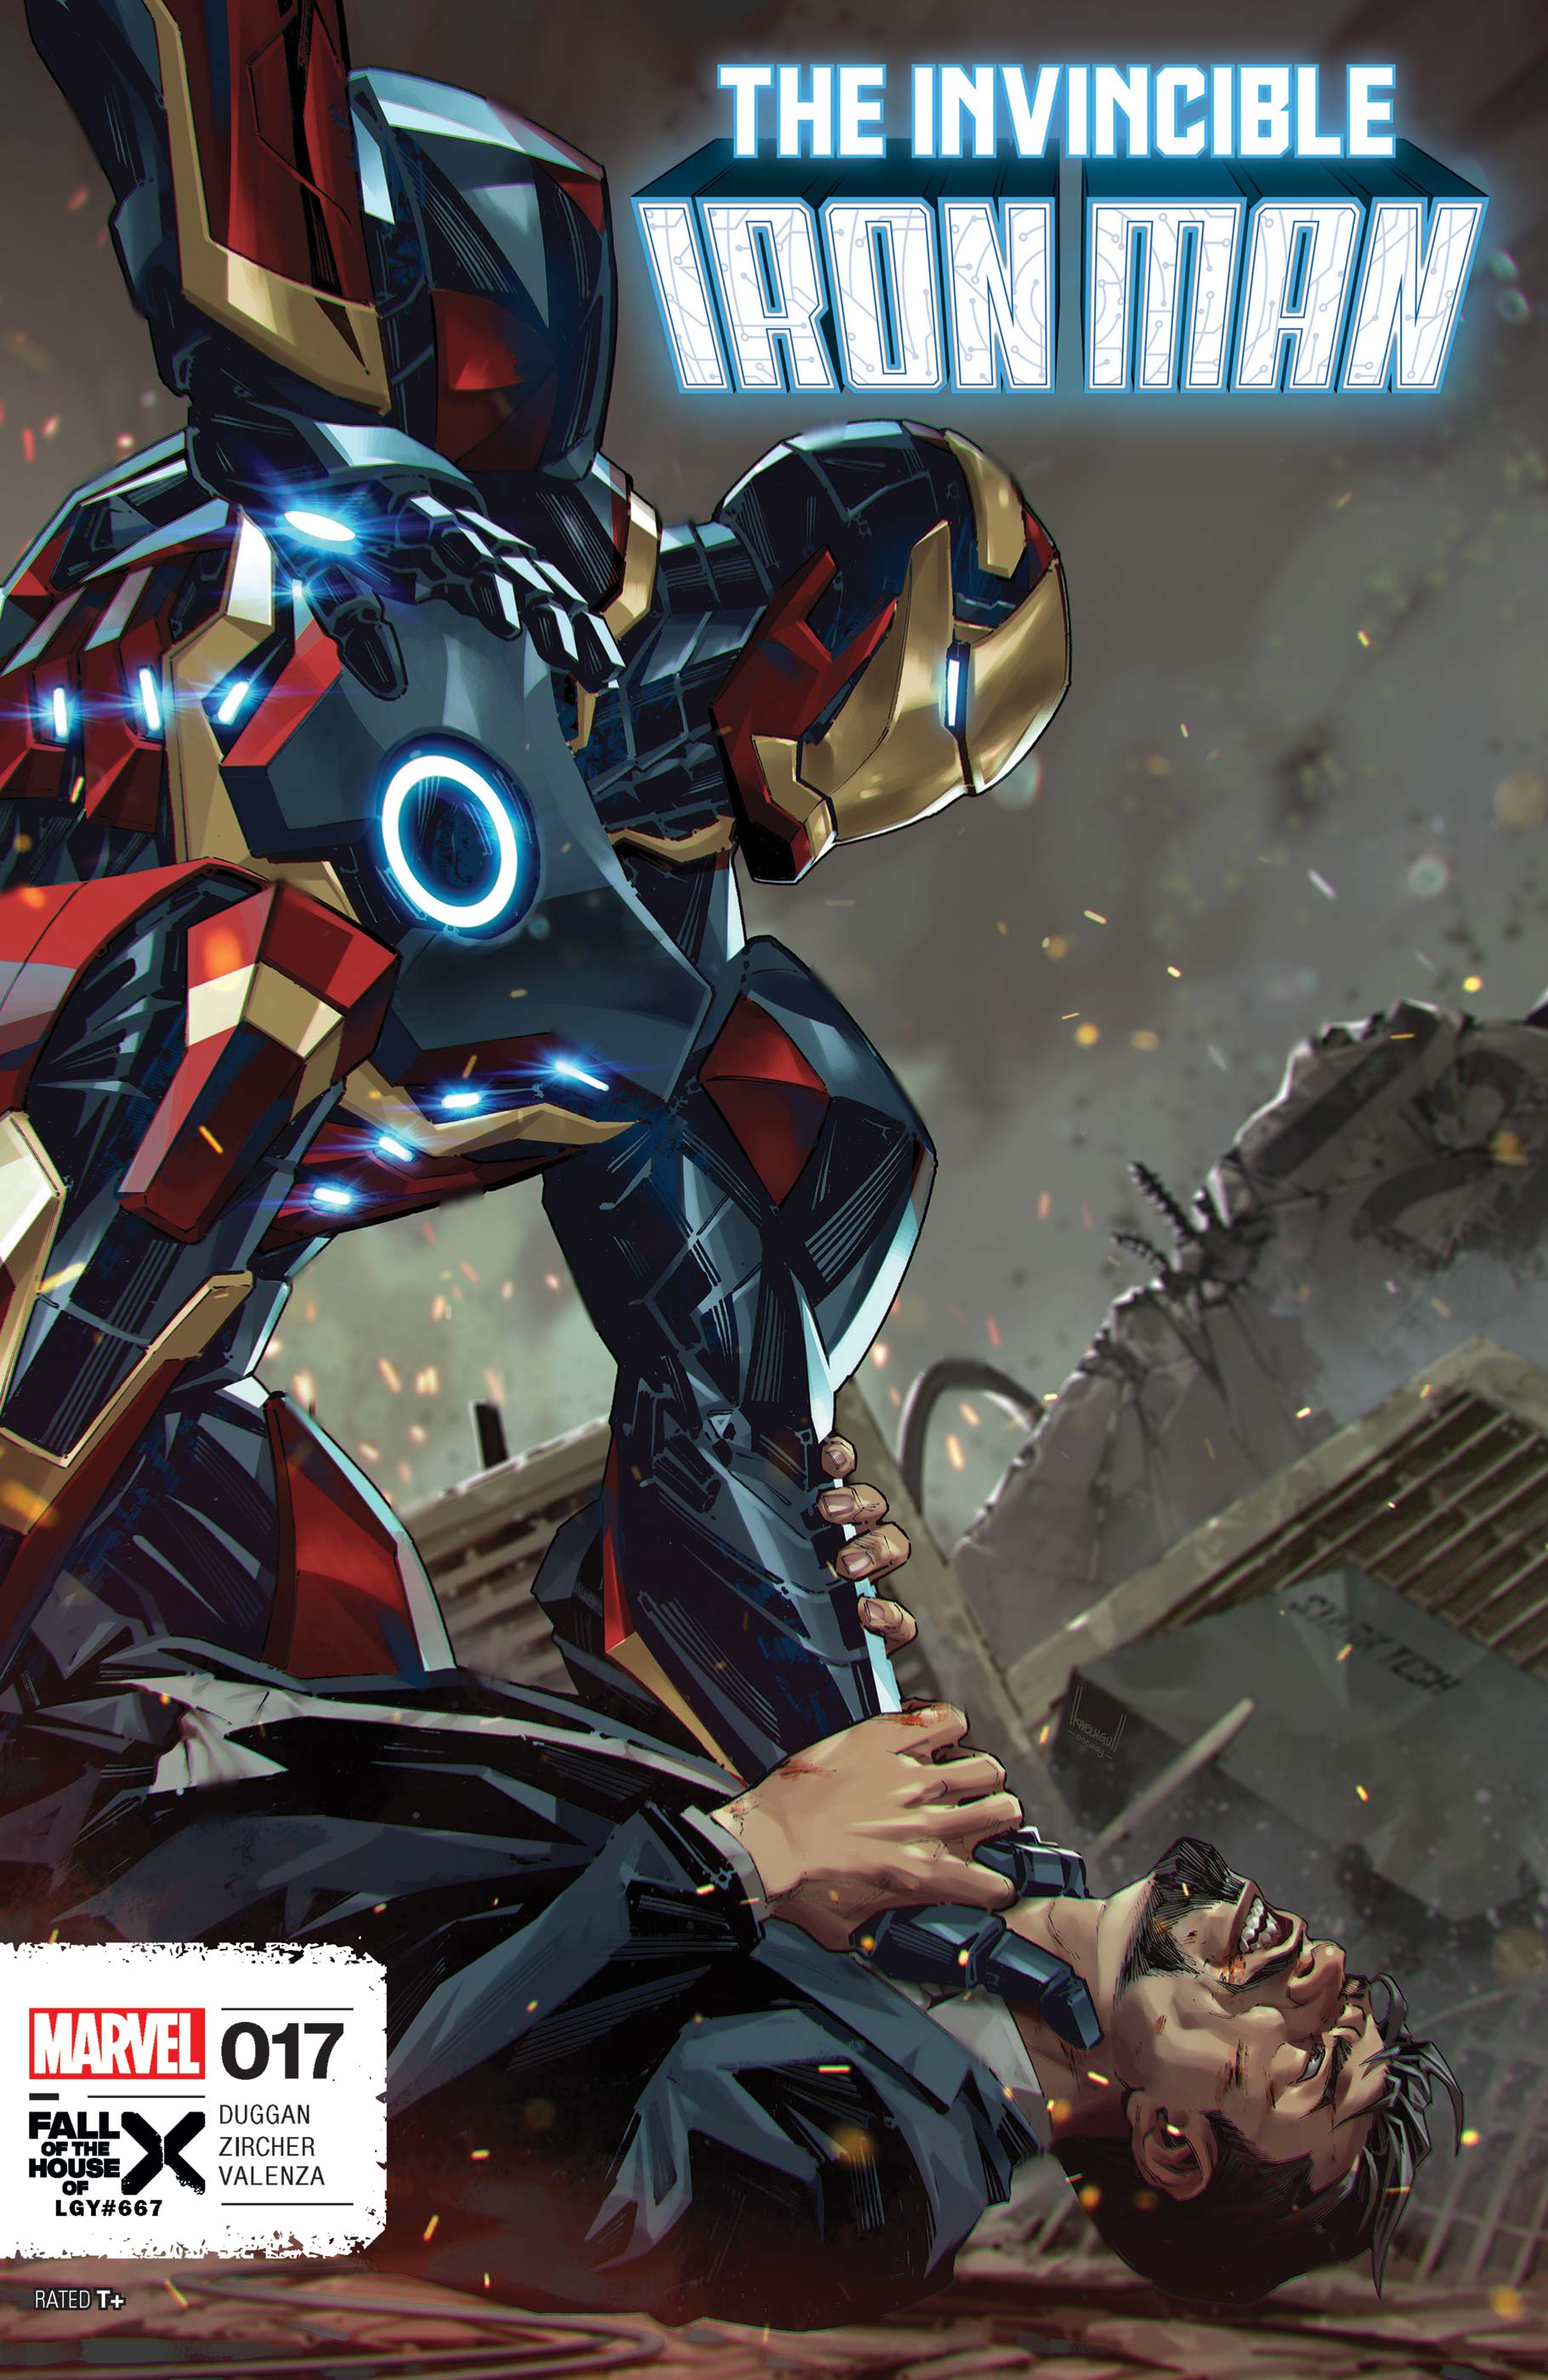 Invincible Iron Man (2022) #17